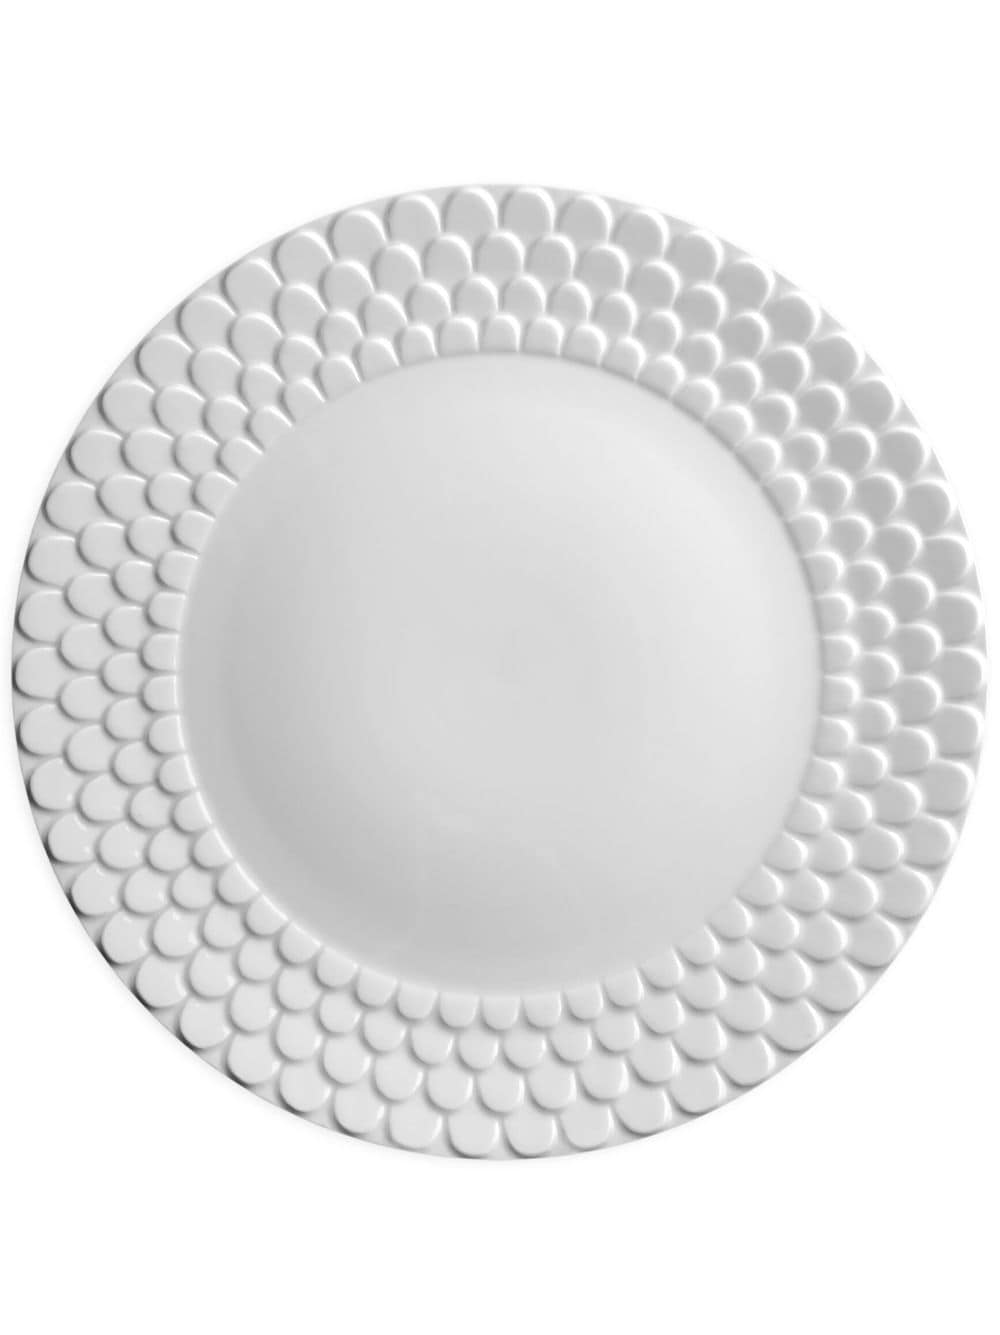 L'Objet Aegean charger plate (30cm) - White von L'Objet